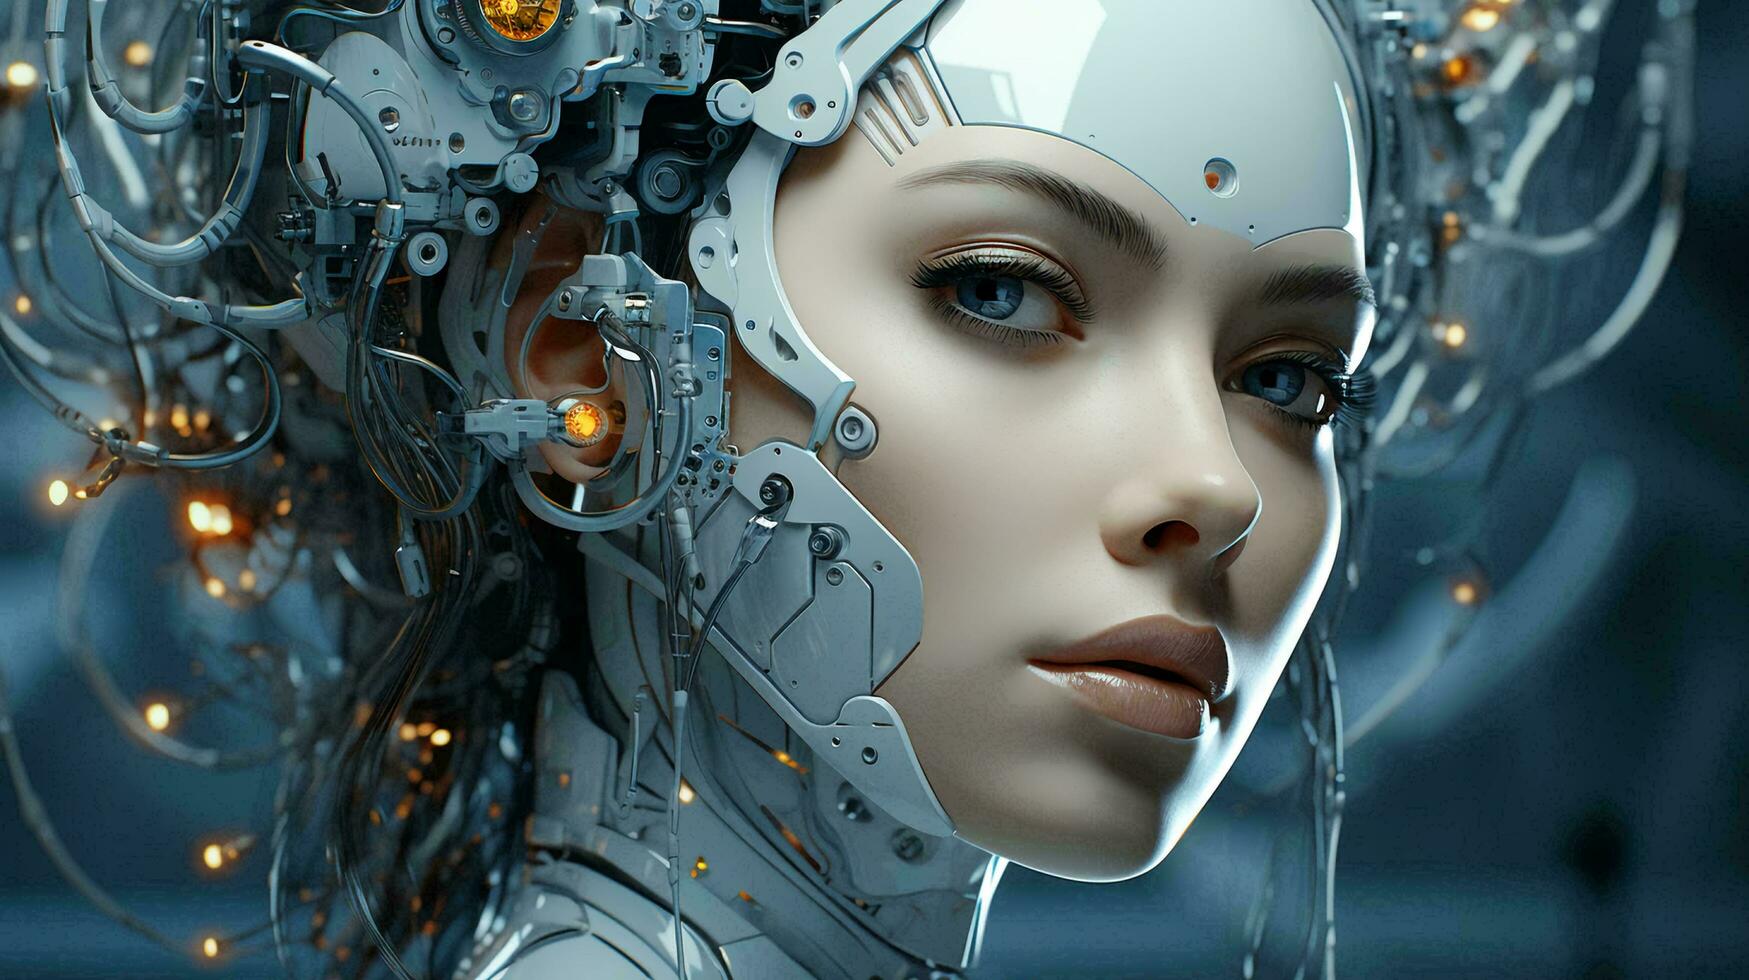 سینا جهانبخش - هوش مصنوعی باهوشتر از انسان میشود